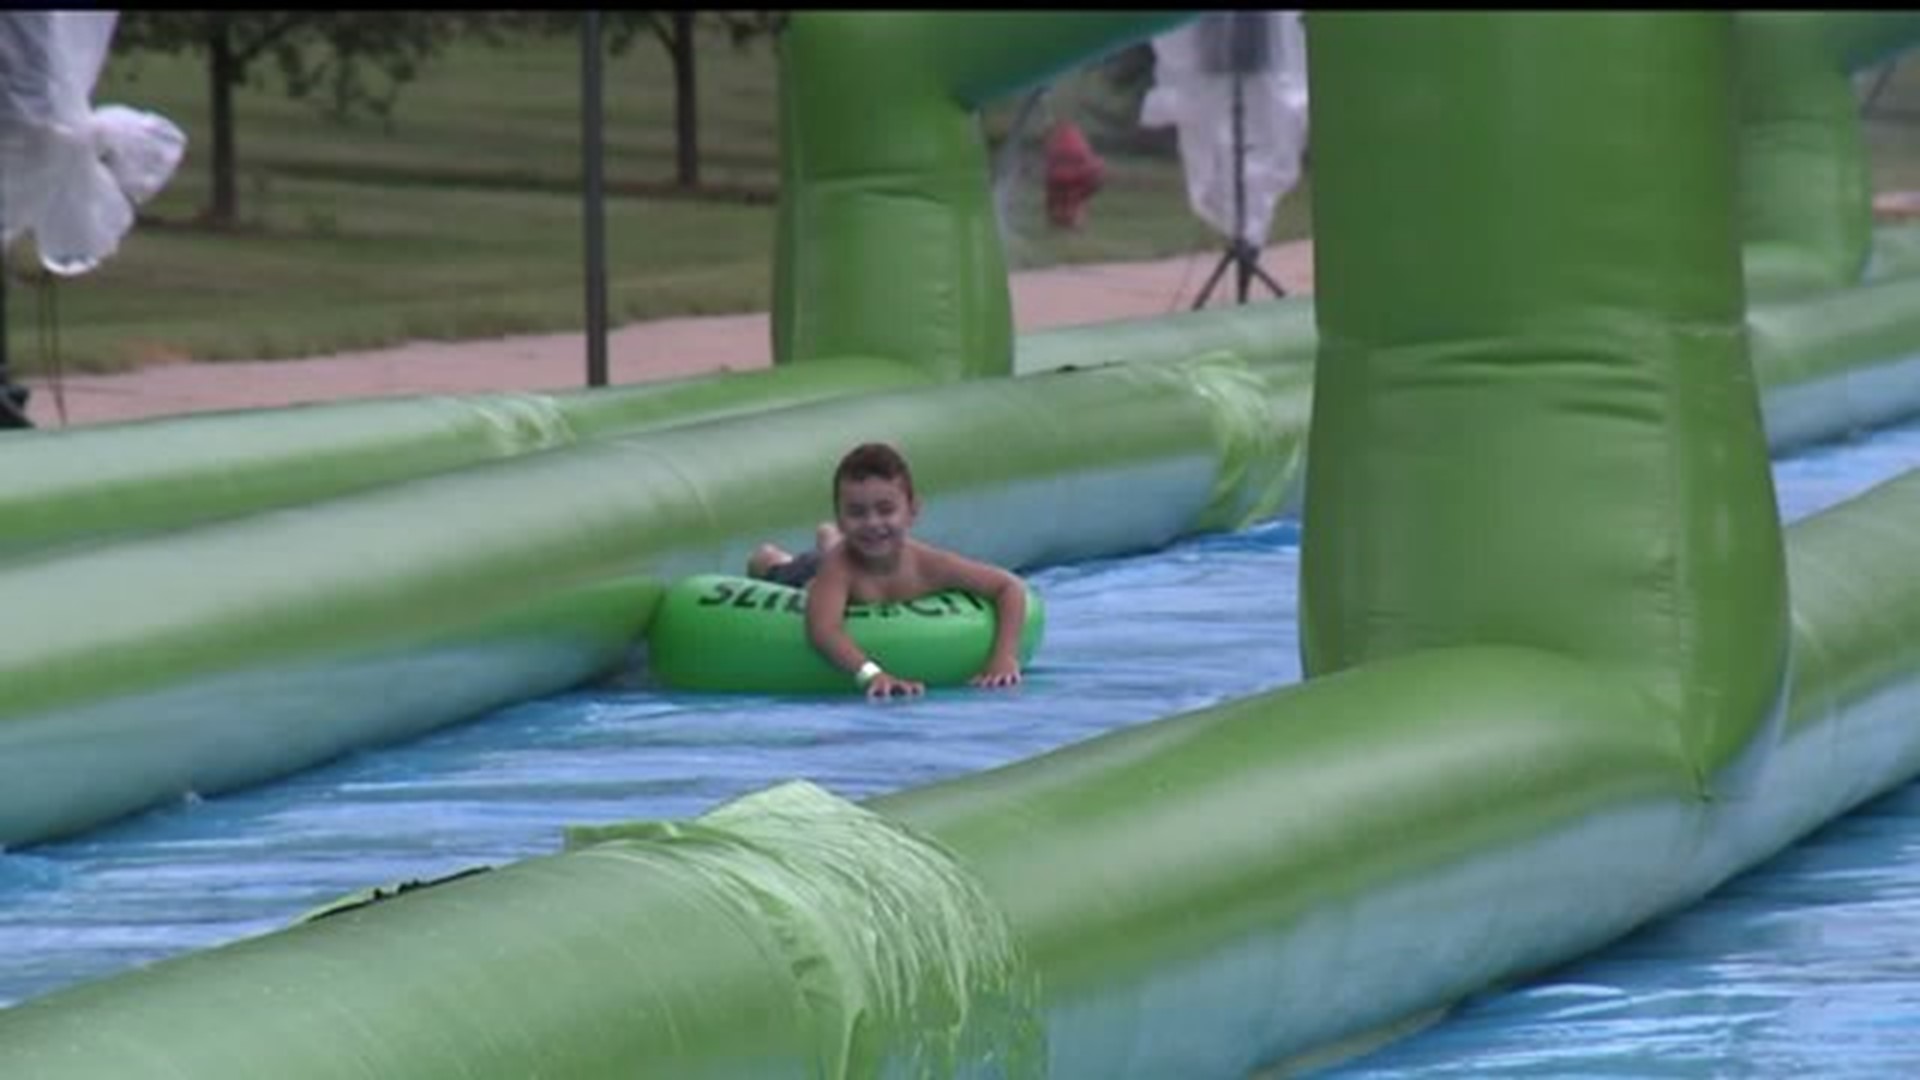 Hundreds enjoy Slide the City event in Lancaster despite the weather